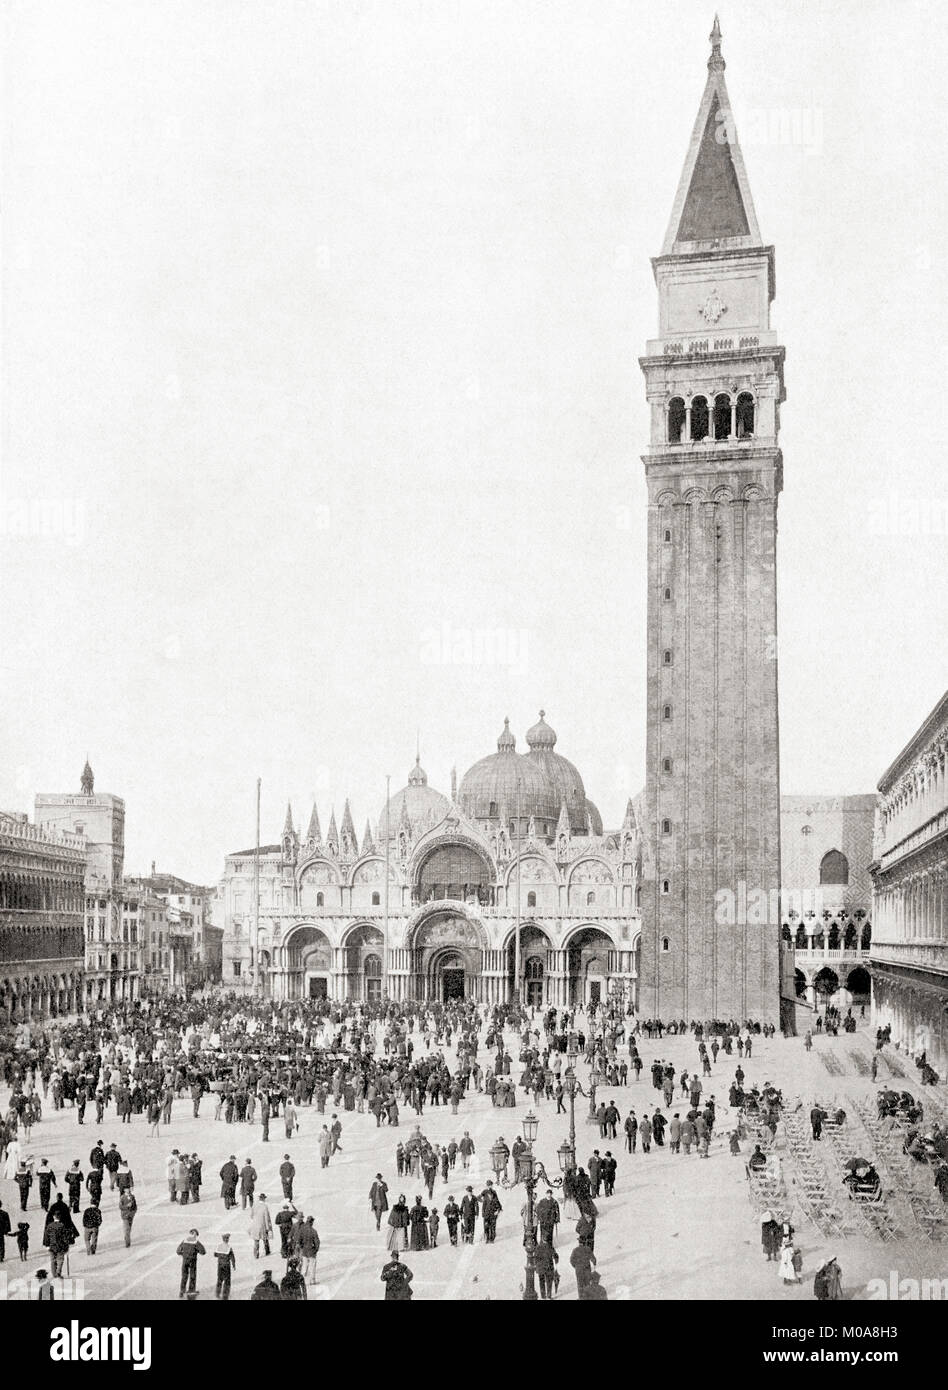 Piazza San Marco ou la Place Saint Marc, Venise, Italie. On voit ici le nouveau Campanile de St Mark's Church de remplacer l'ancien qui s'est effondré en 1902. Des merveilles du monde, publié c.1911. Banque D'Images